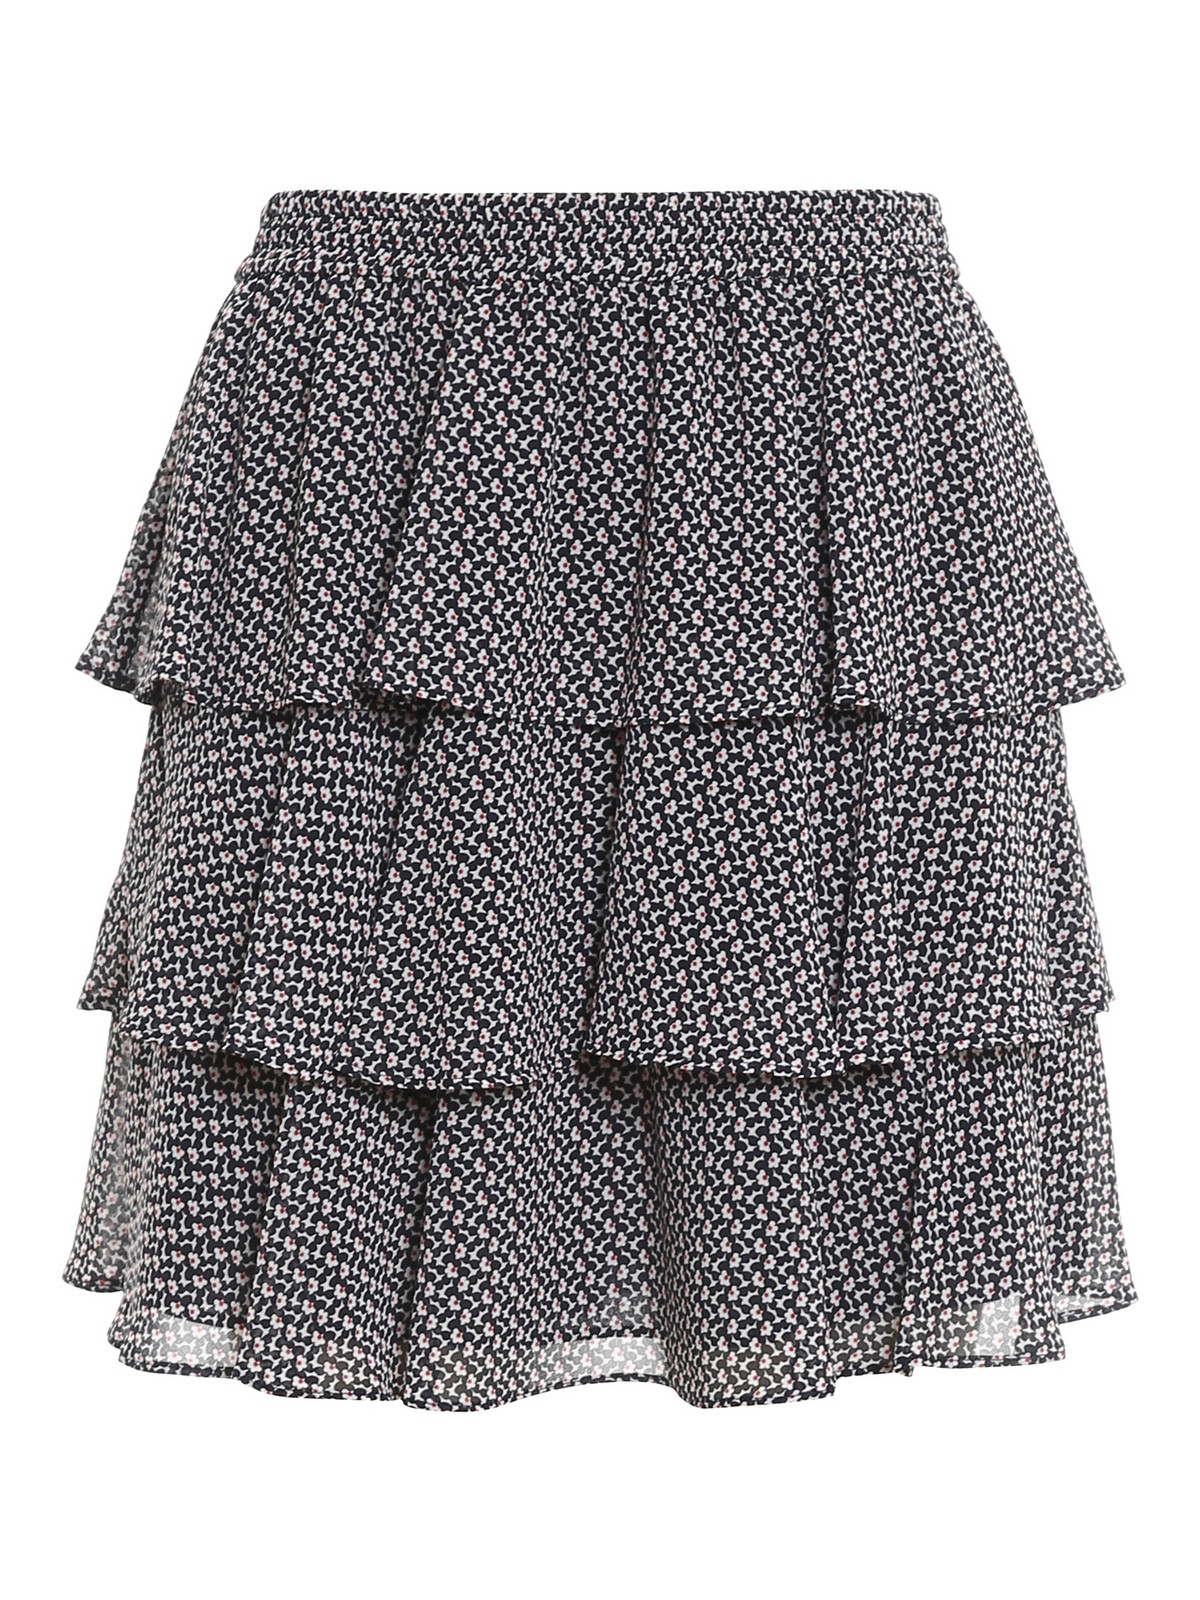 Mini skirts Michael Kors - Floral patterned crêpe mini skirt ...